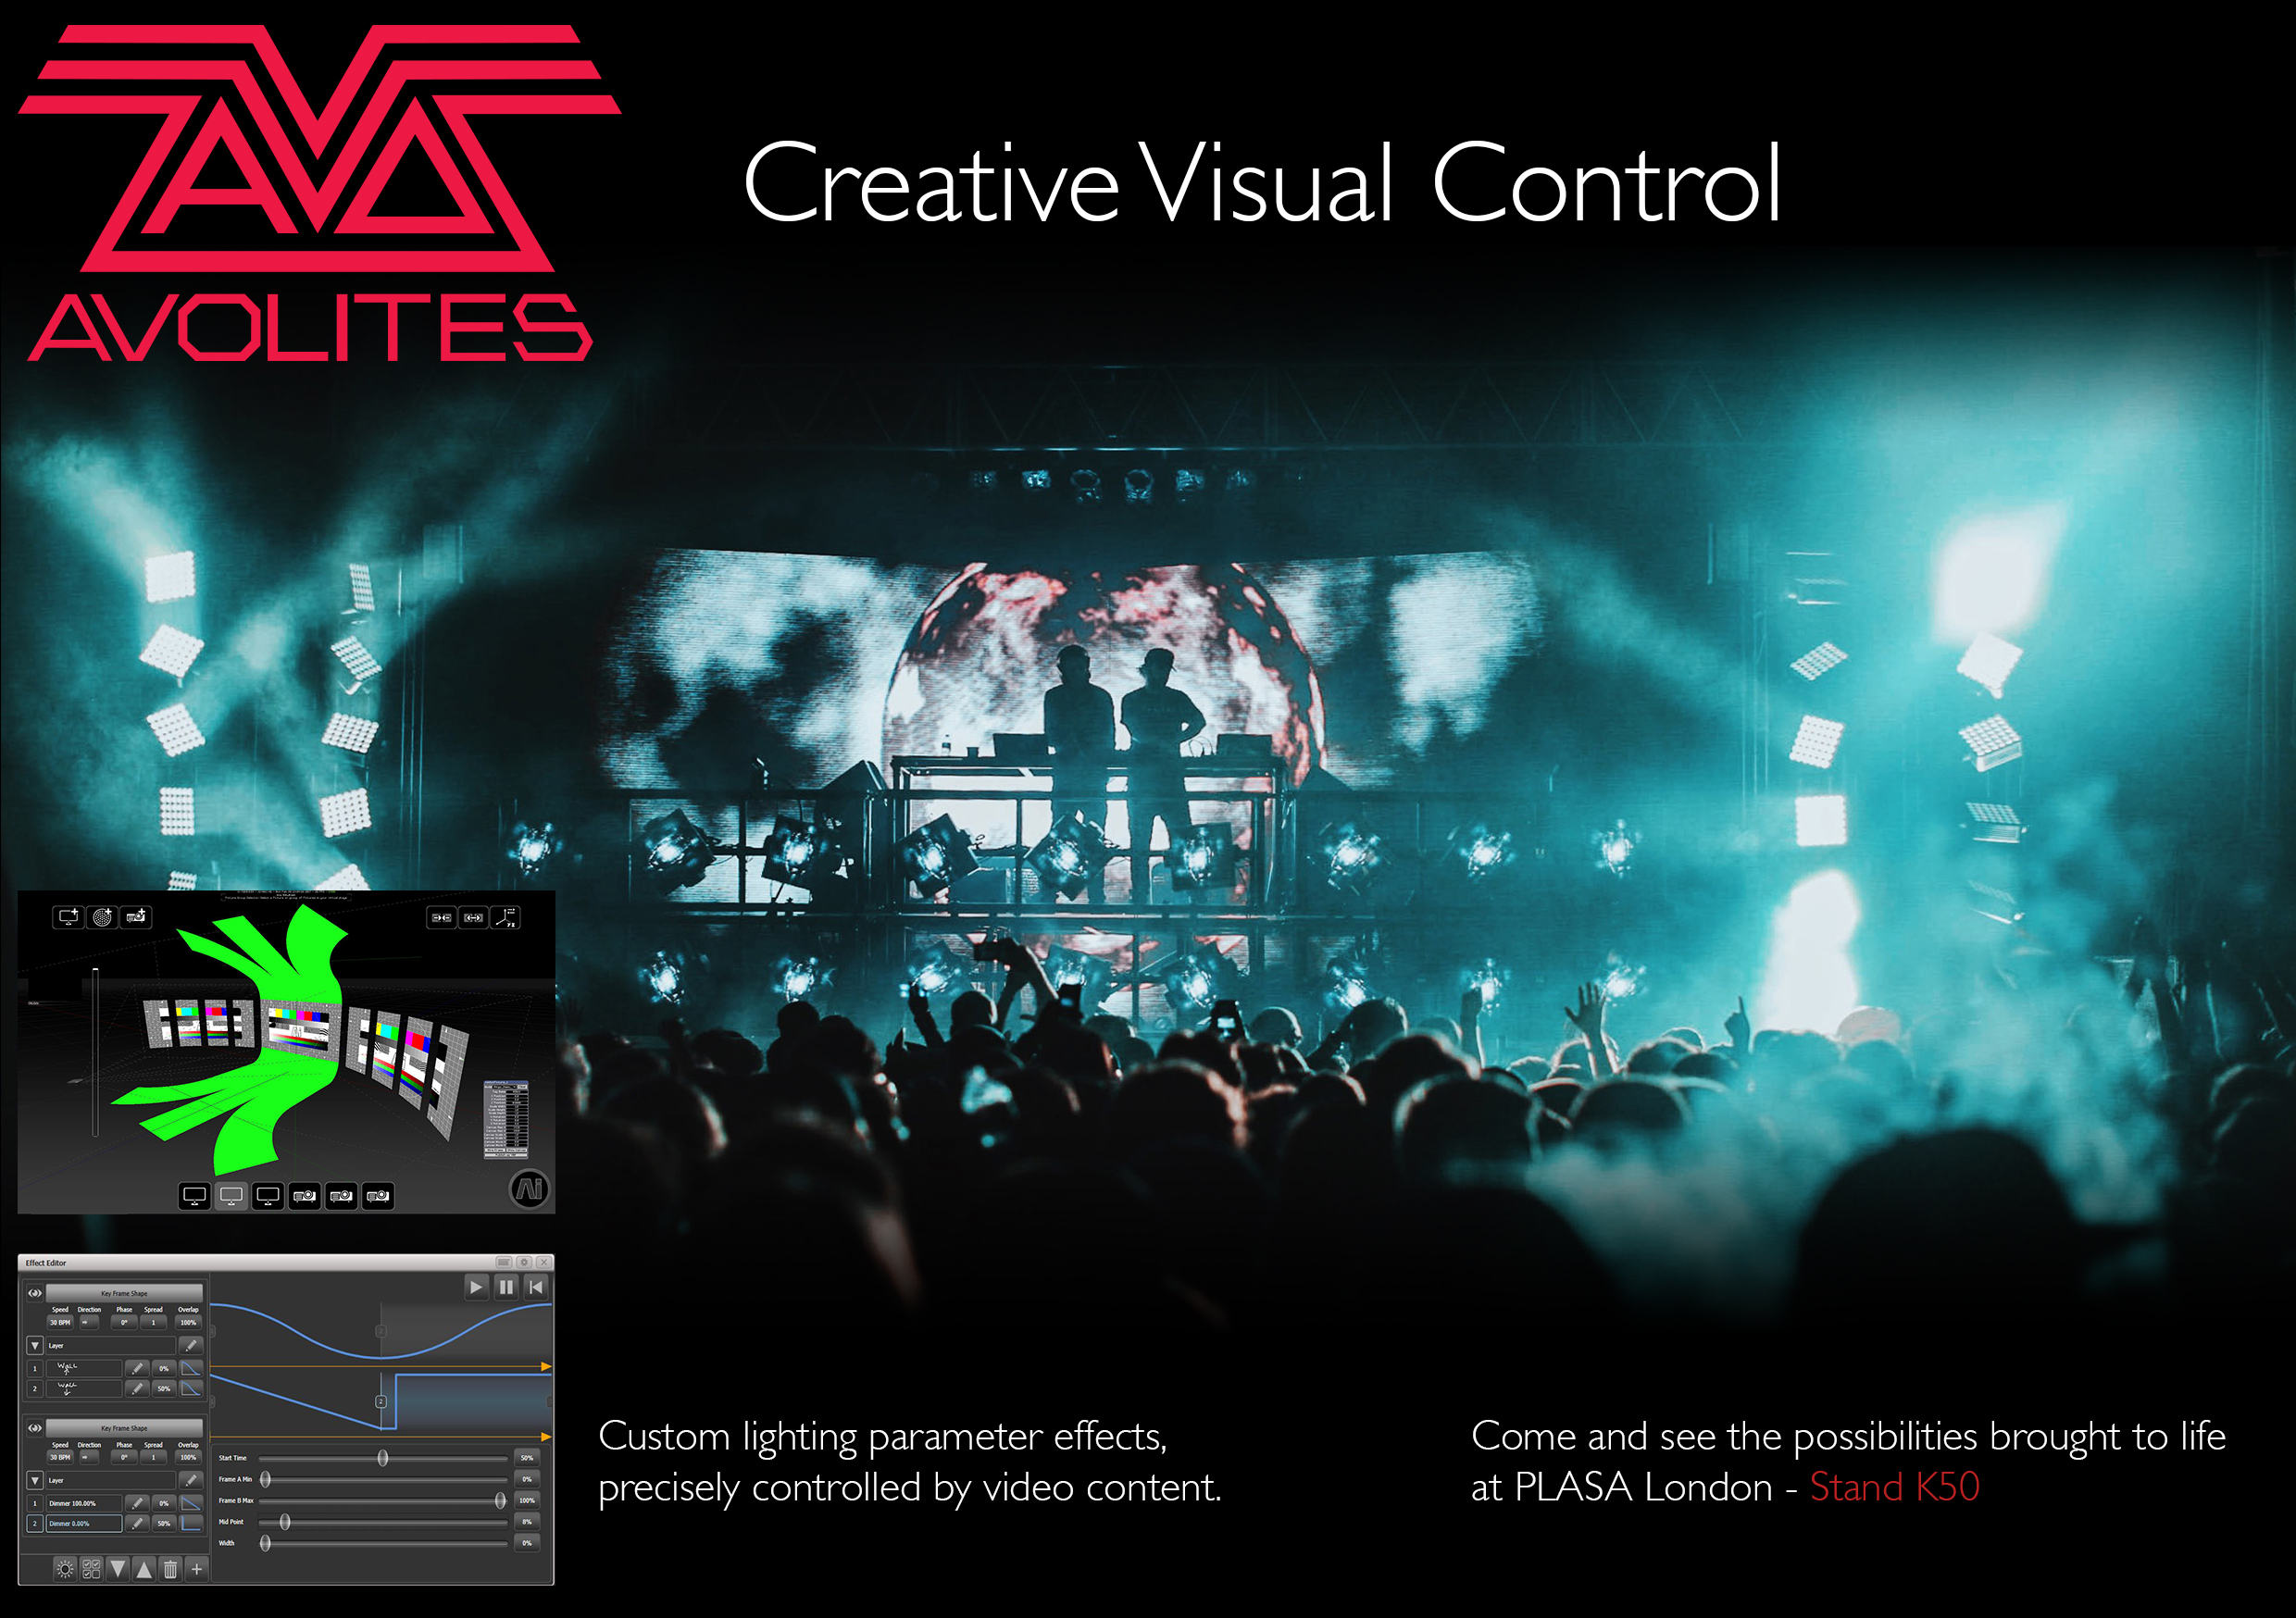 Avolites showcase lighting and video software updates, Titan v10.1 and Ai v10